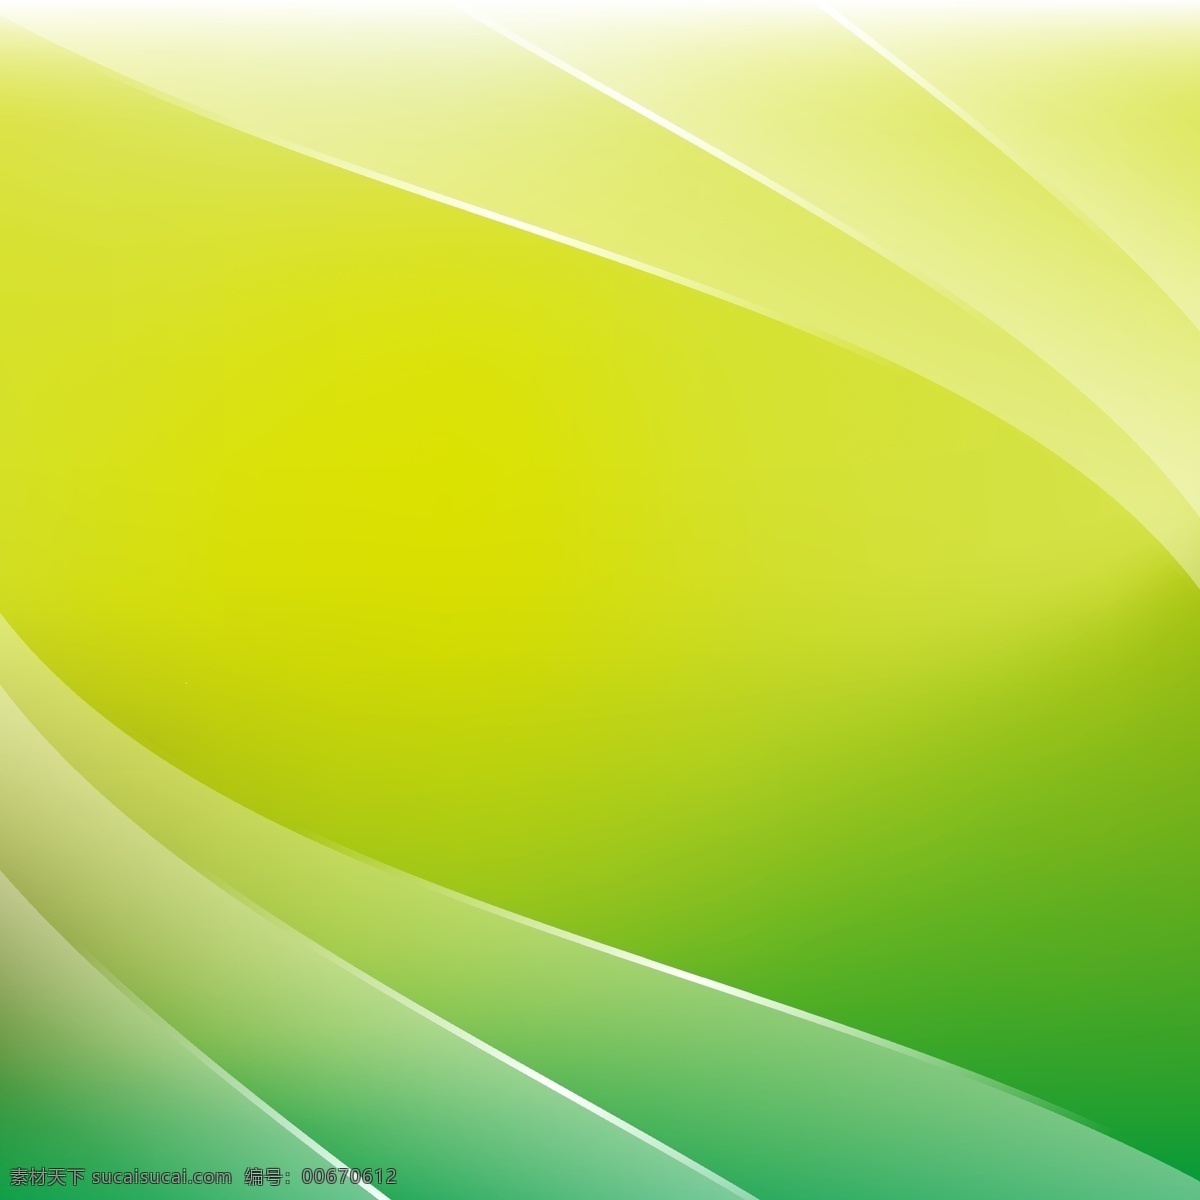 绿色的背景 背景 抽象背景 抽象 绿色 颜色 绿色背景 壁纸 色彩背景 色彩 背景绿色